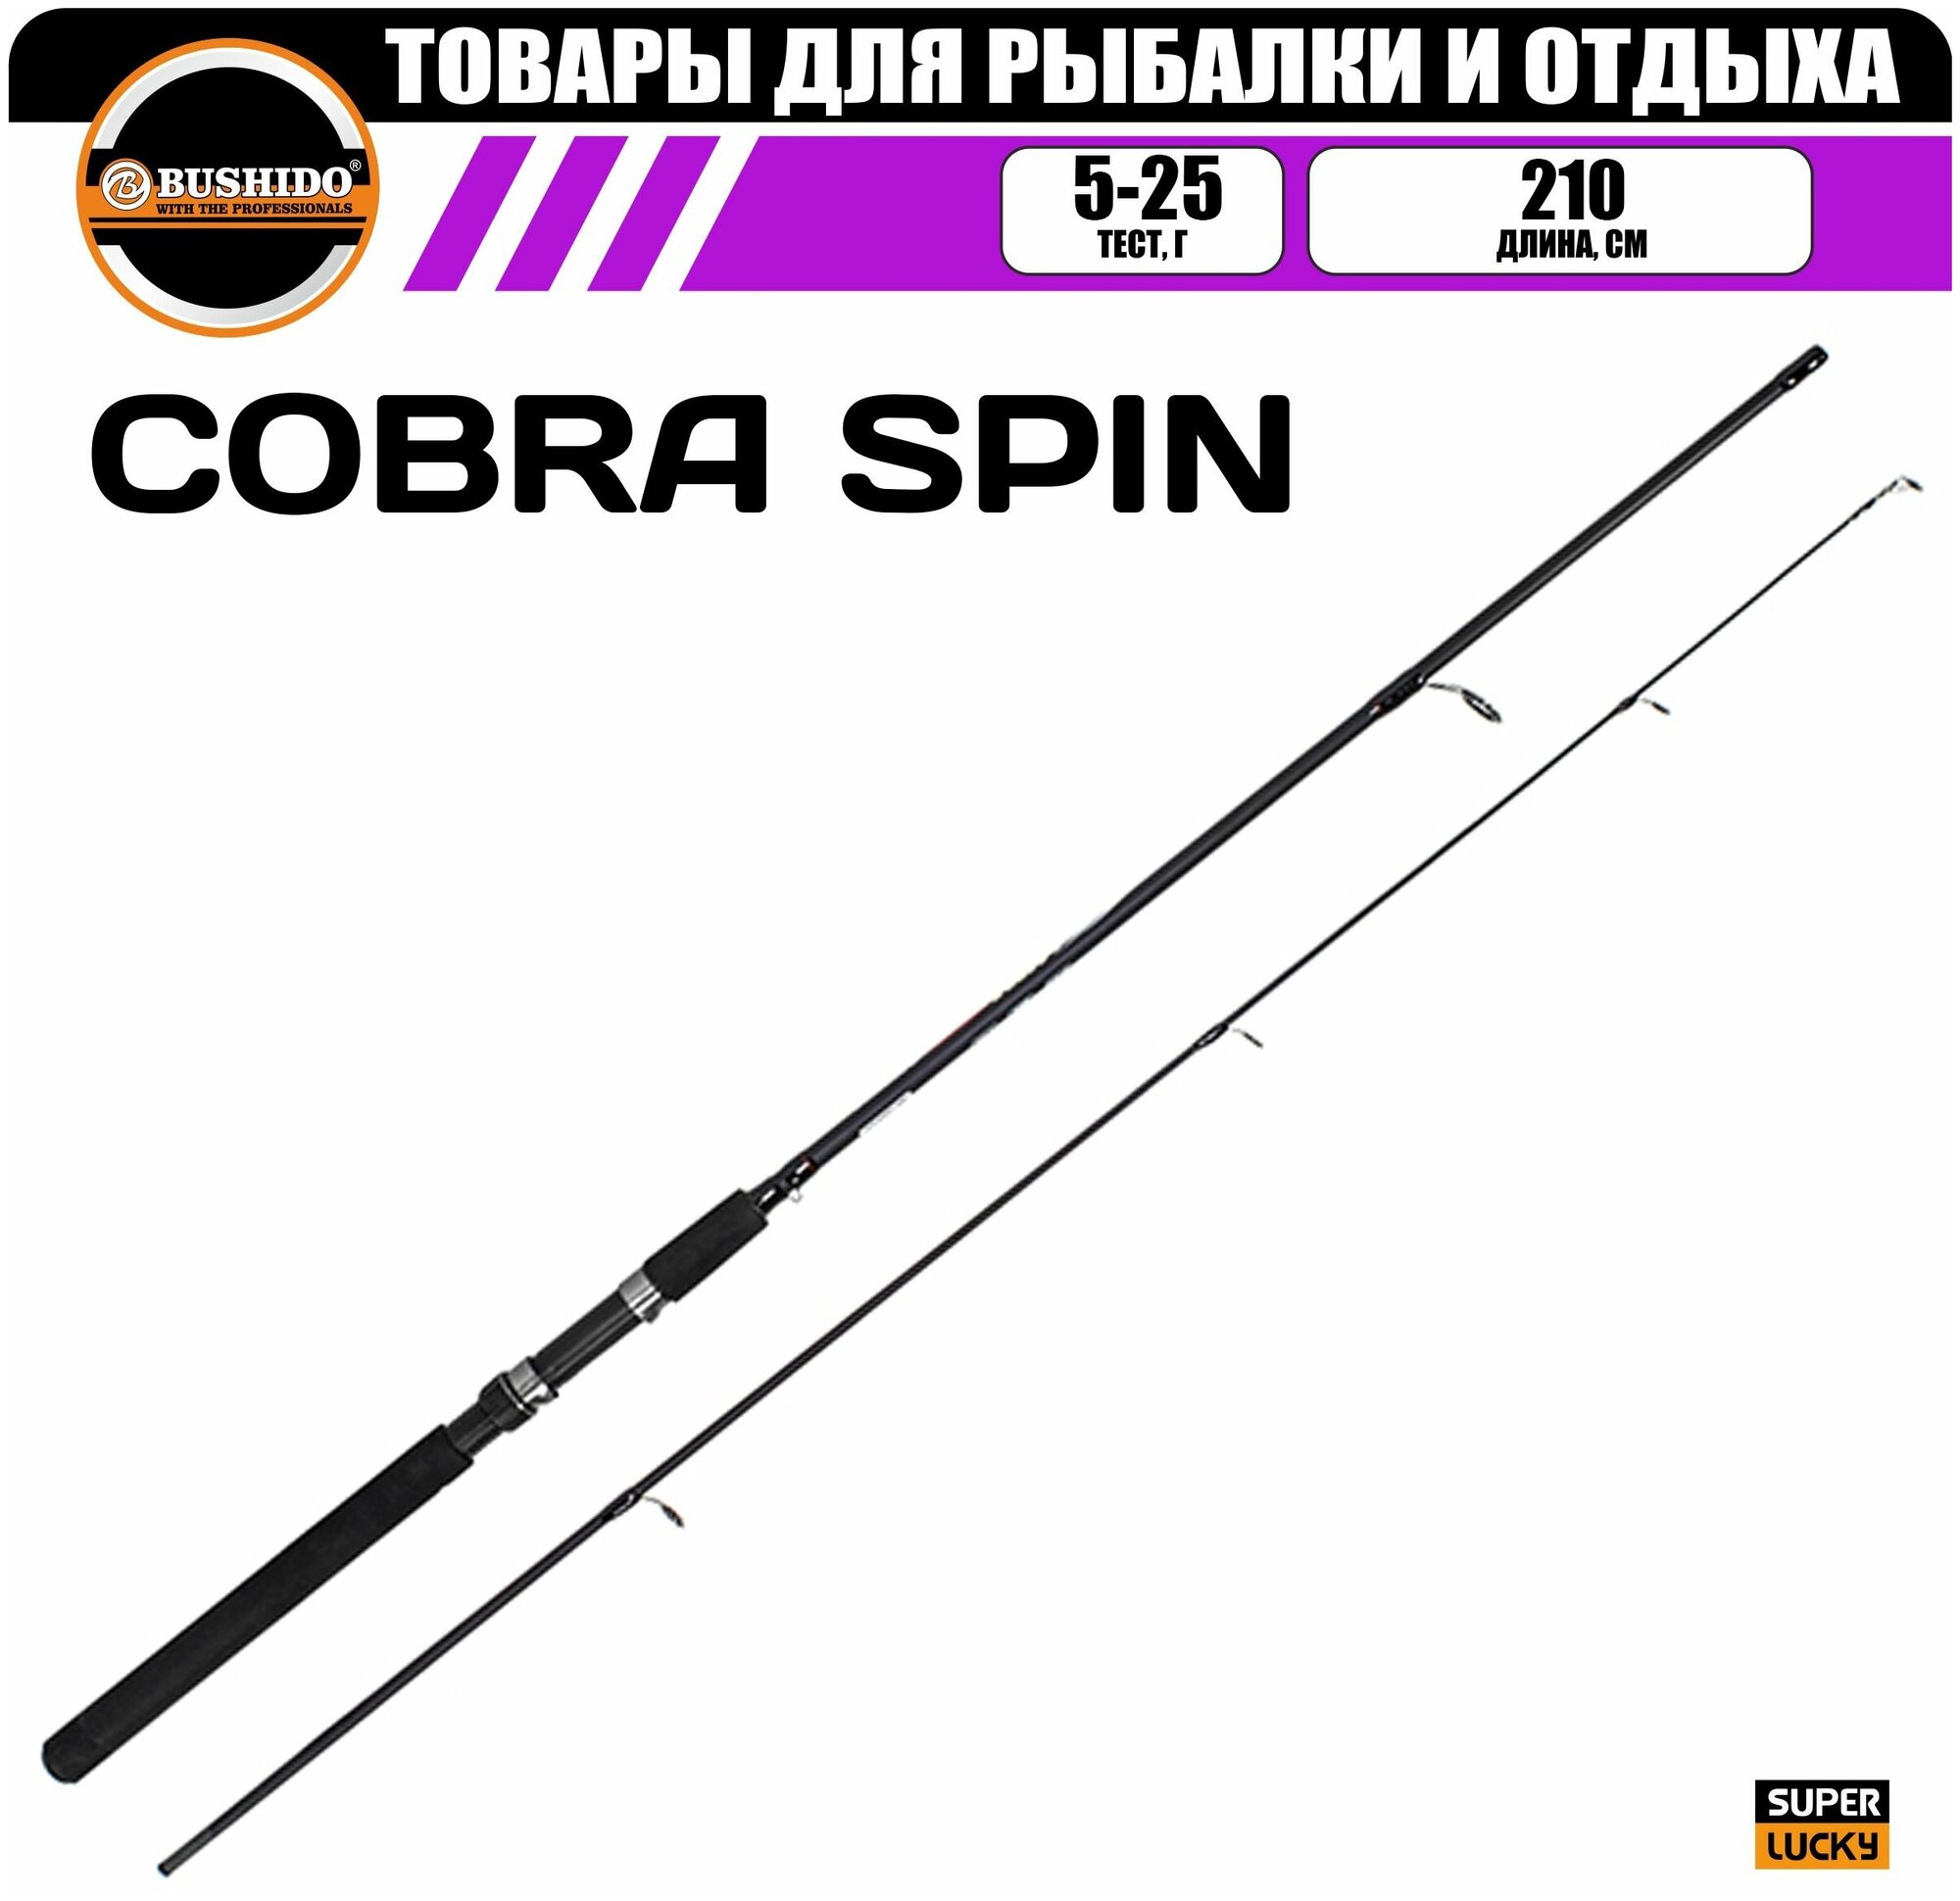 Спиннинг рыболовный BUSHIDO COBRA 2.10м (5-25гр), штекерная конструкция, для рыбалки, медленный строй, полая (tubular tip) вершинка